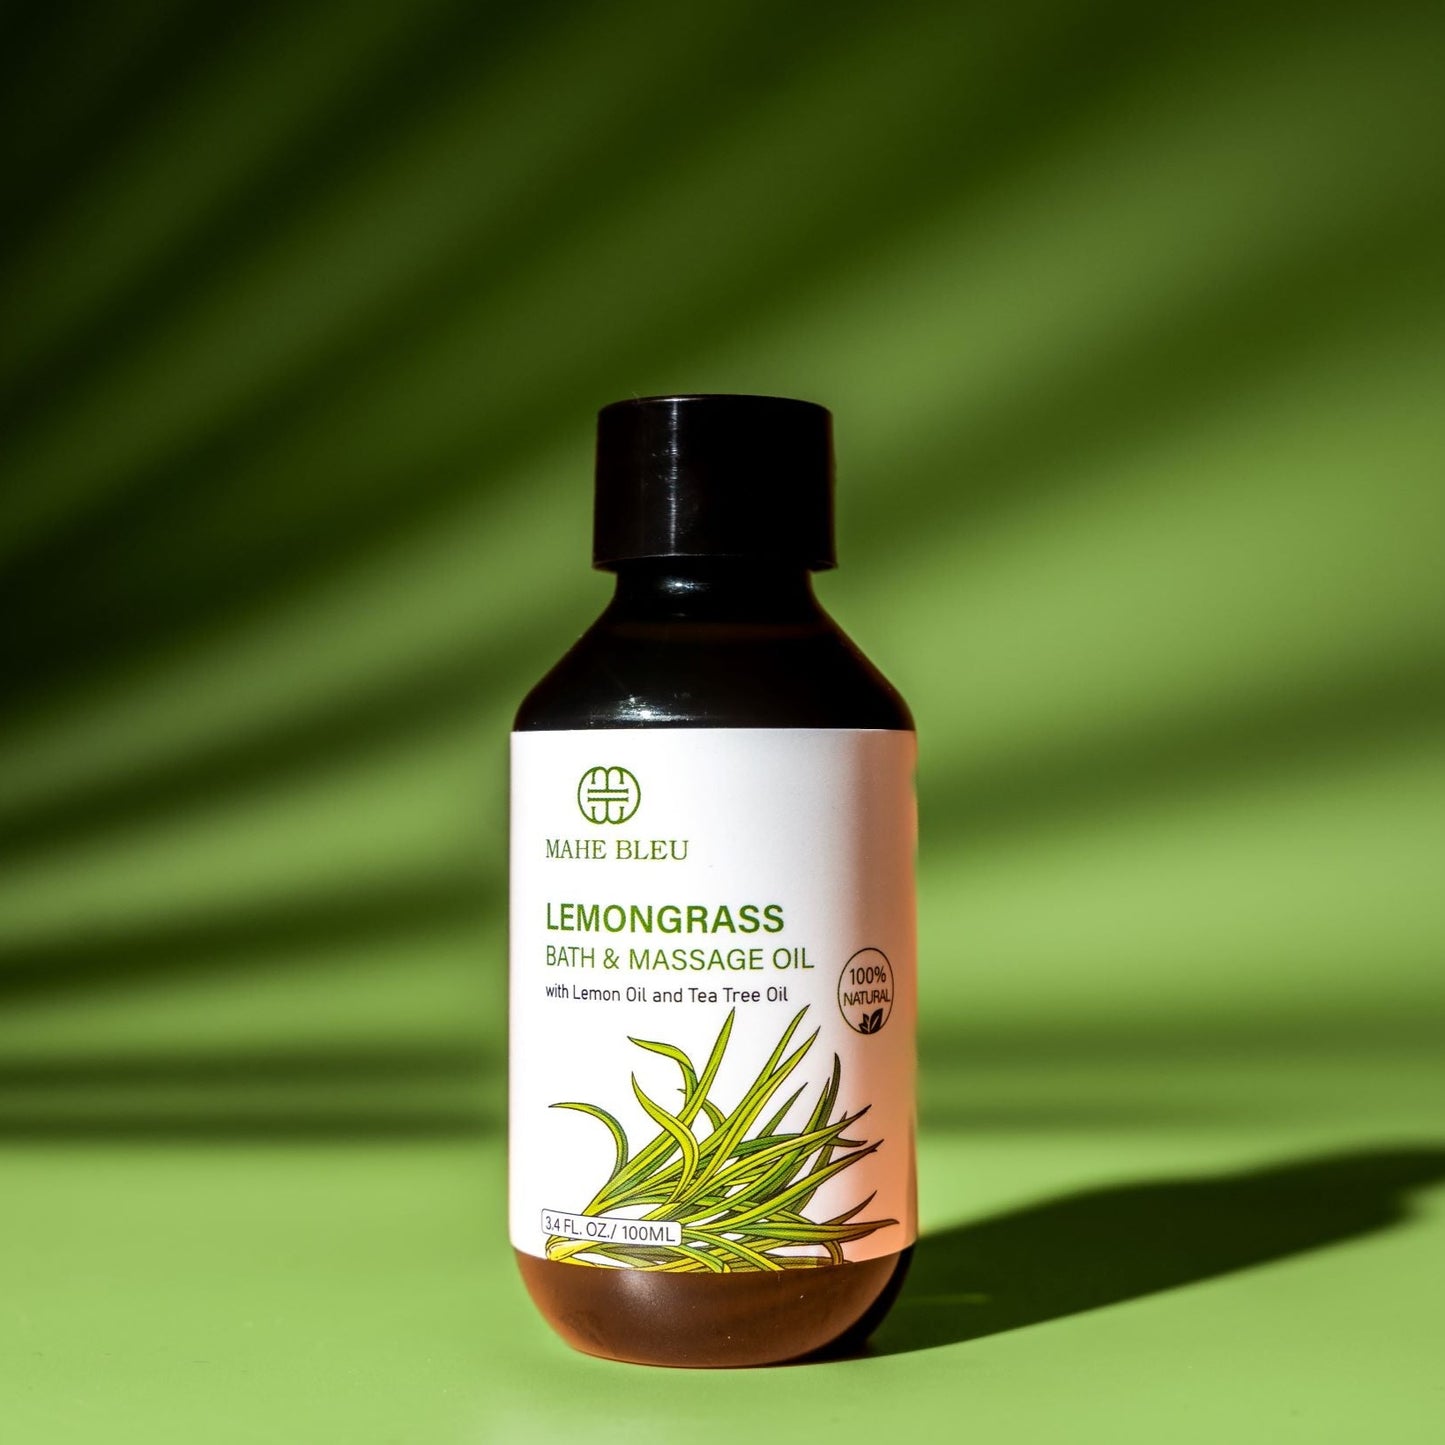 Lemongrass Bath & Massage Oil